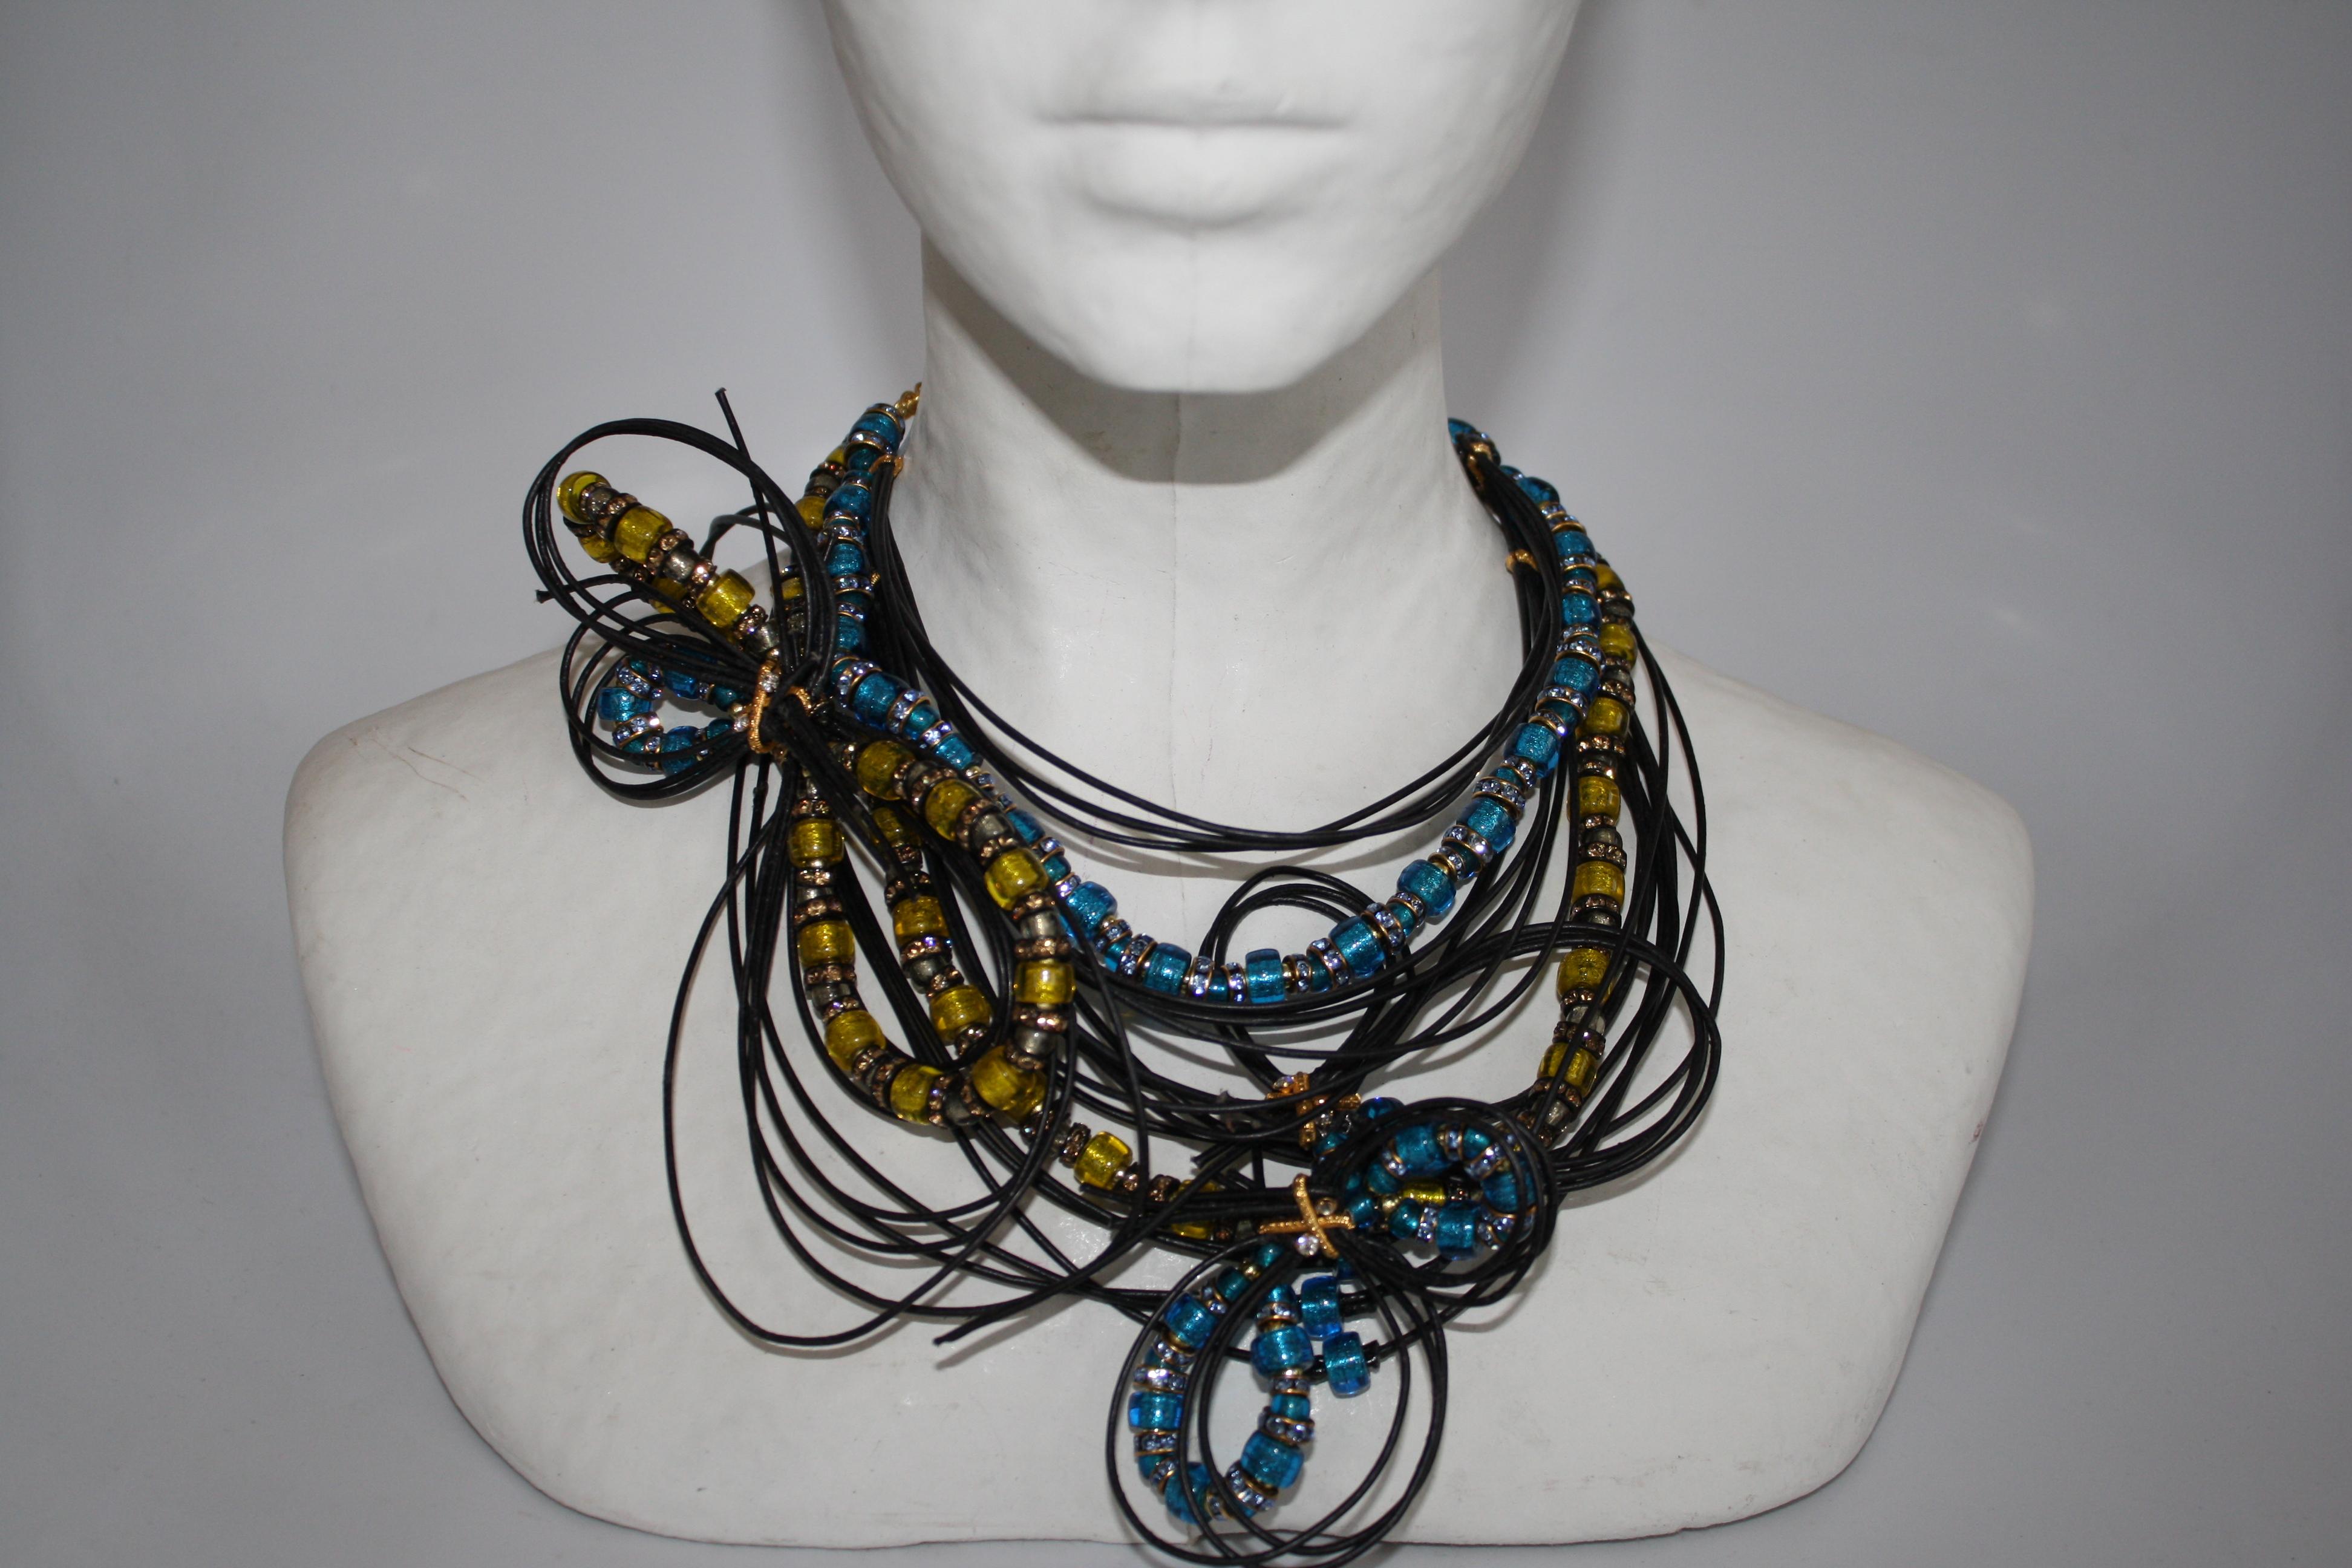 Wahre Kunstfertigkeit wird in dieser handgefertigten Halskette aus Leder und Muranoglas von Francoise Montague lebendig. 